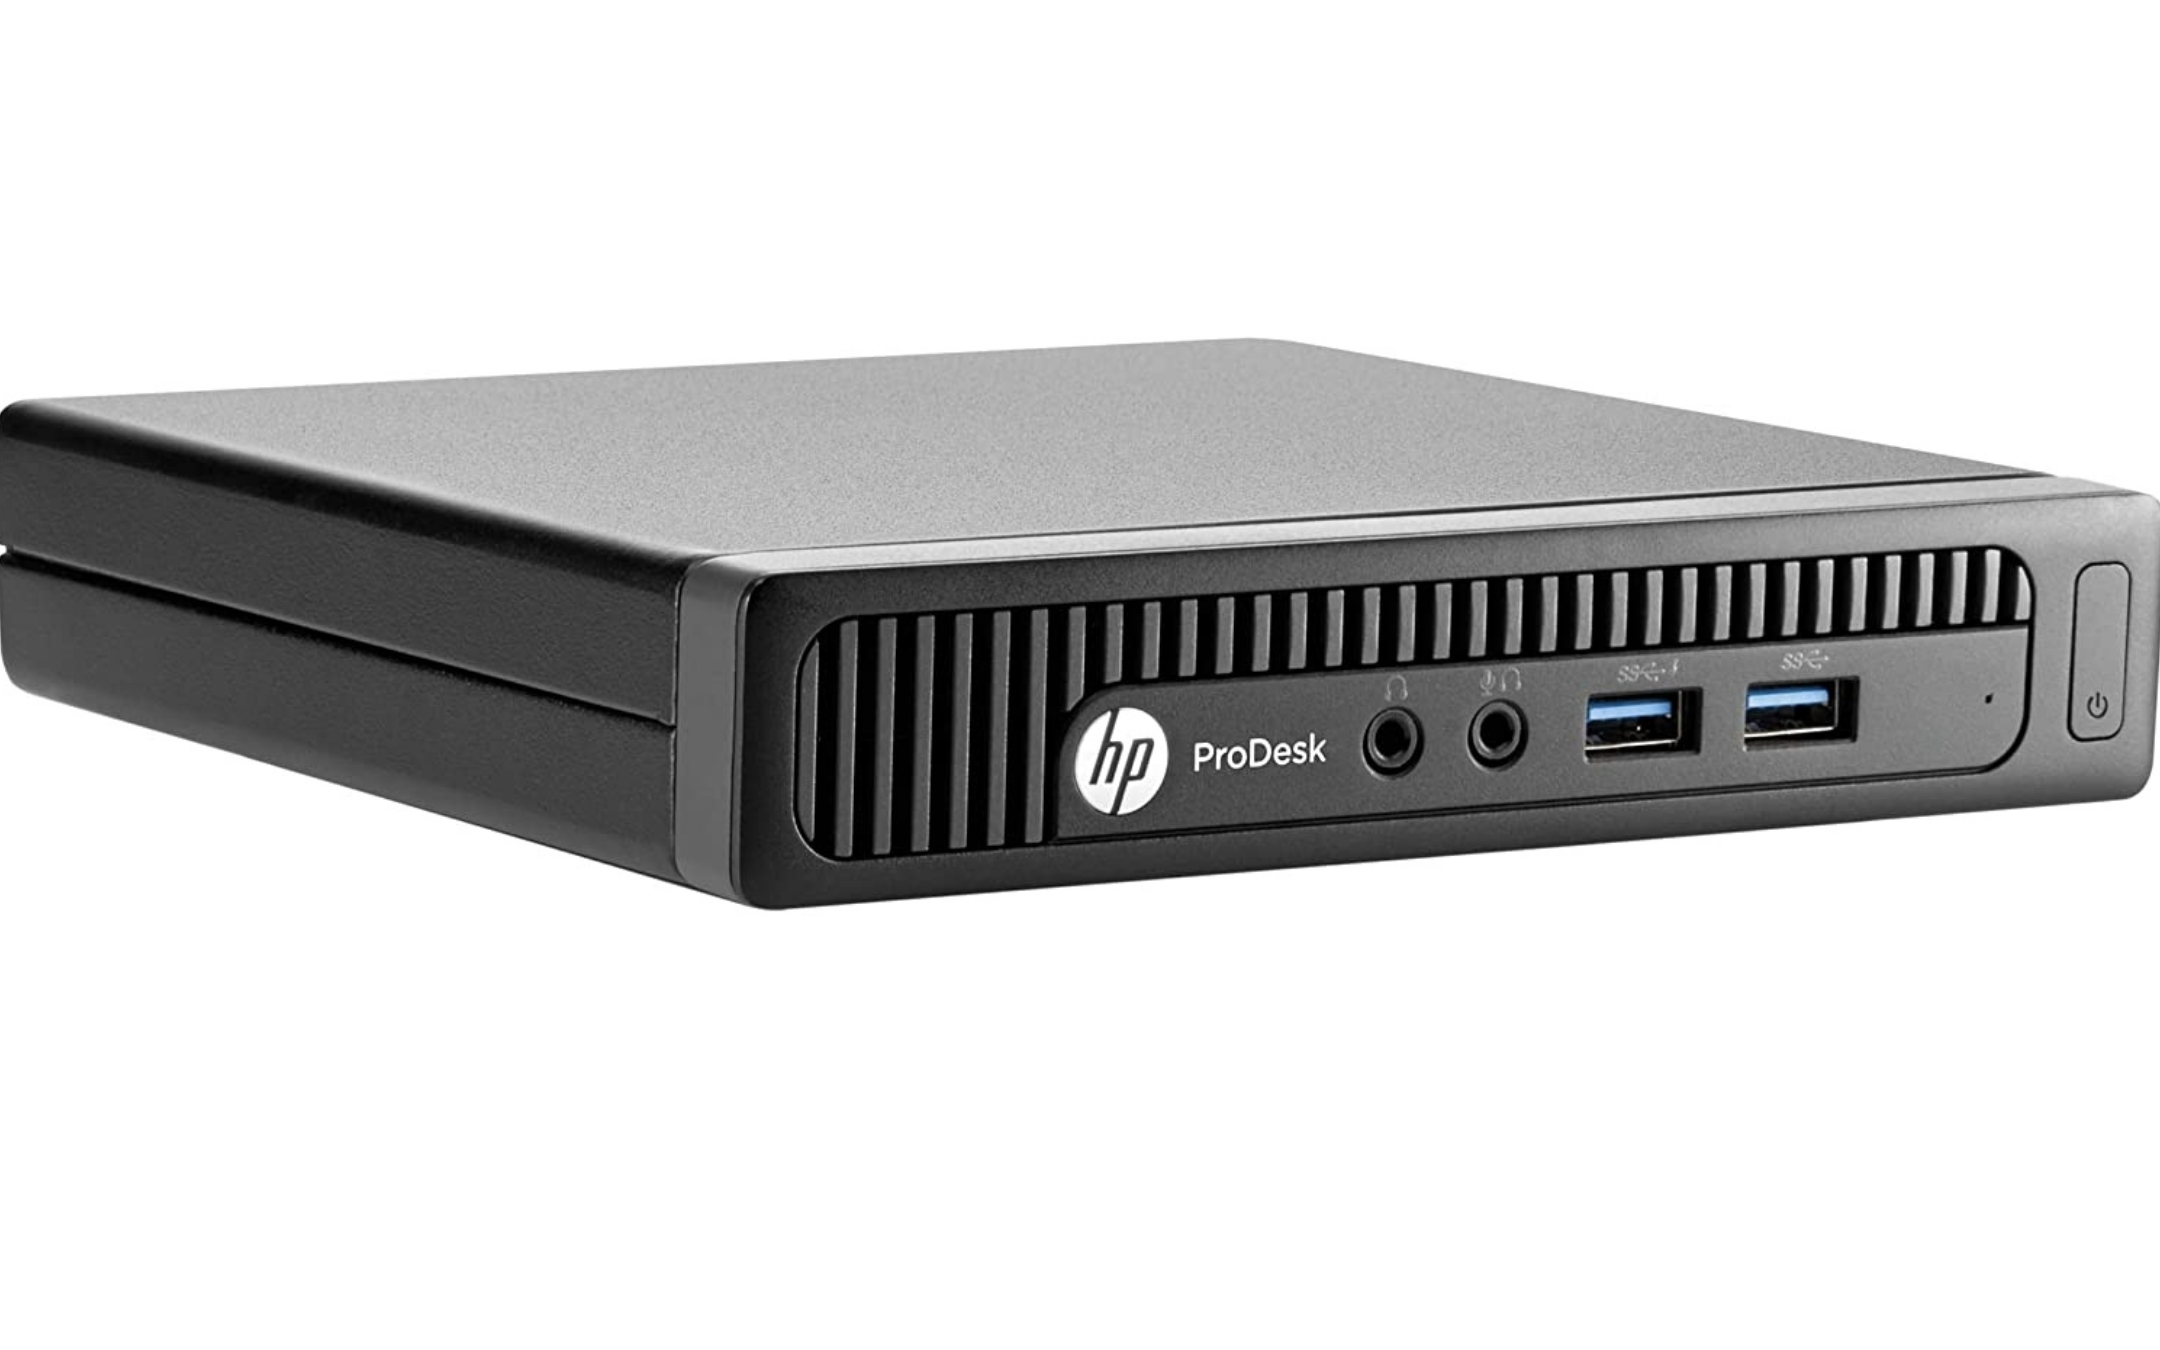 Mini PC HP Prodesk 600 ricondizionato a soli 204€ su Amazon